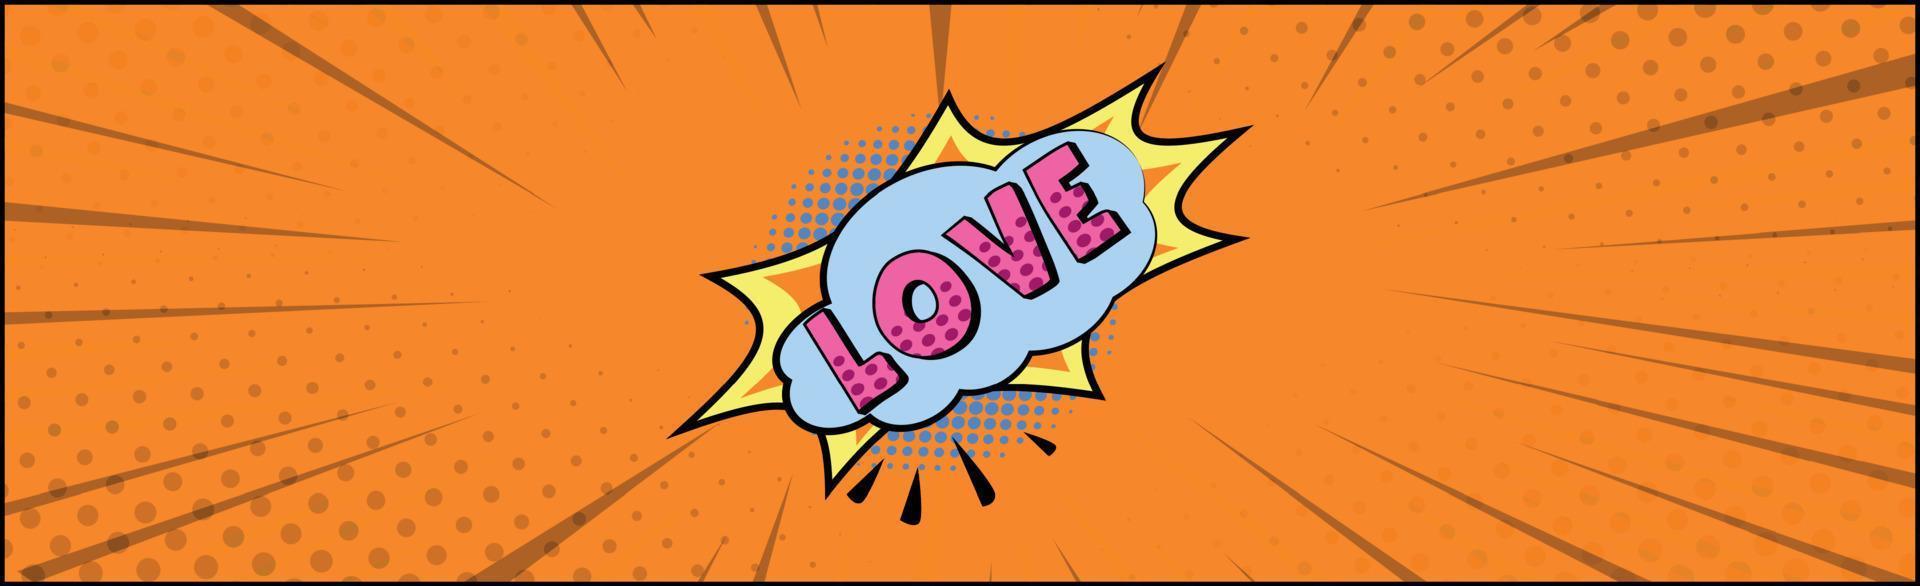 Comic-Zoom-Inschrift Liebe auf farbigem Hintergrund - Vektor